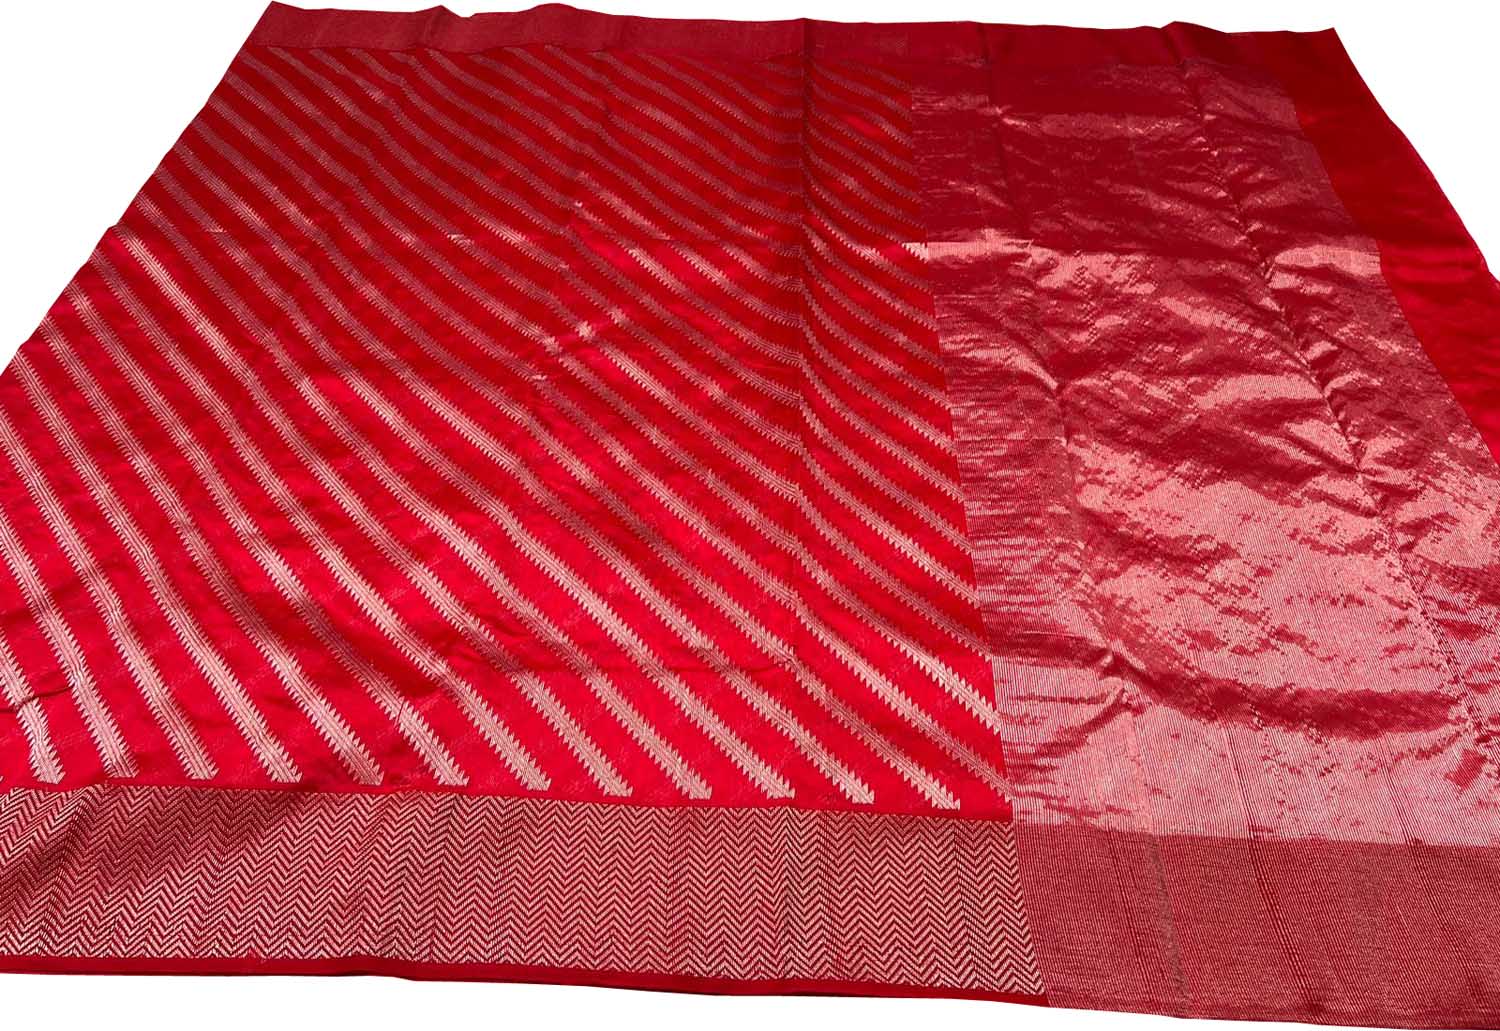 Red Chanderi Handloom Pure Silk Stripe Design Saree - Luxurion World